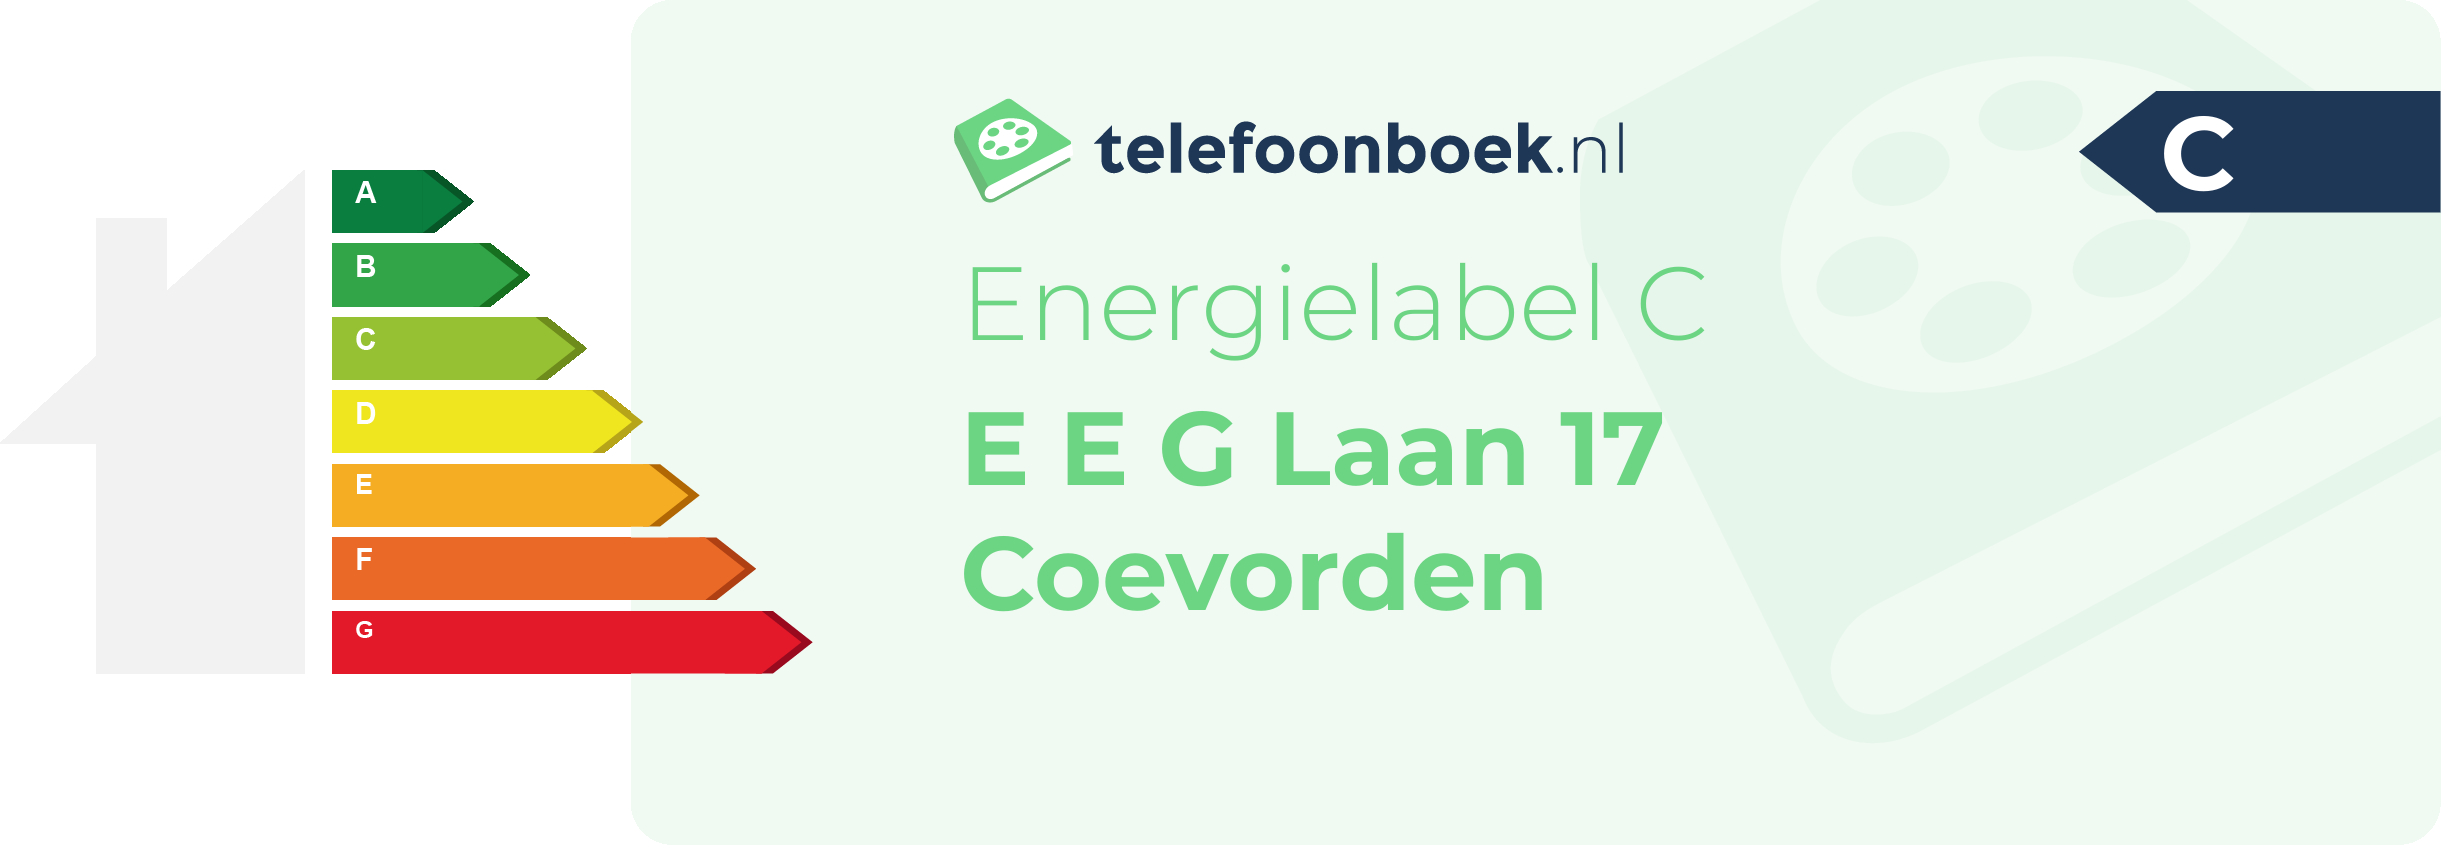 Energielabel E E G Laan 17 Coevorden